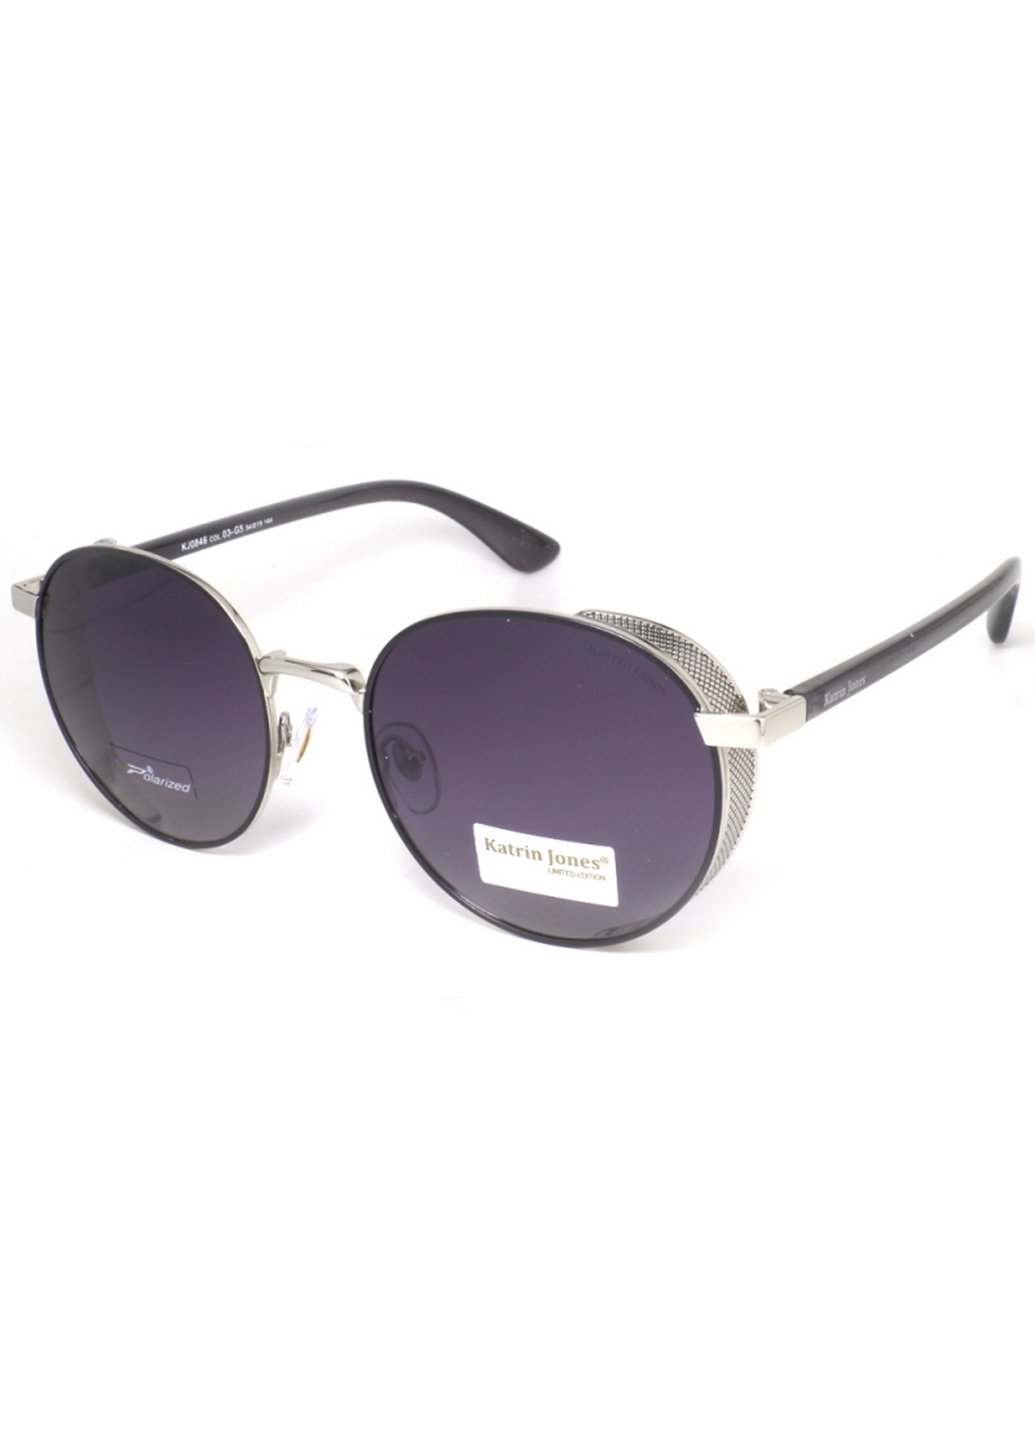 Купить Женские солнцезащитные очки Katrin Jones с поляризацией KJ0846 180001 - Фиолетовый в интернет-магазине